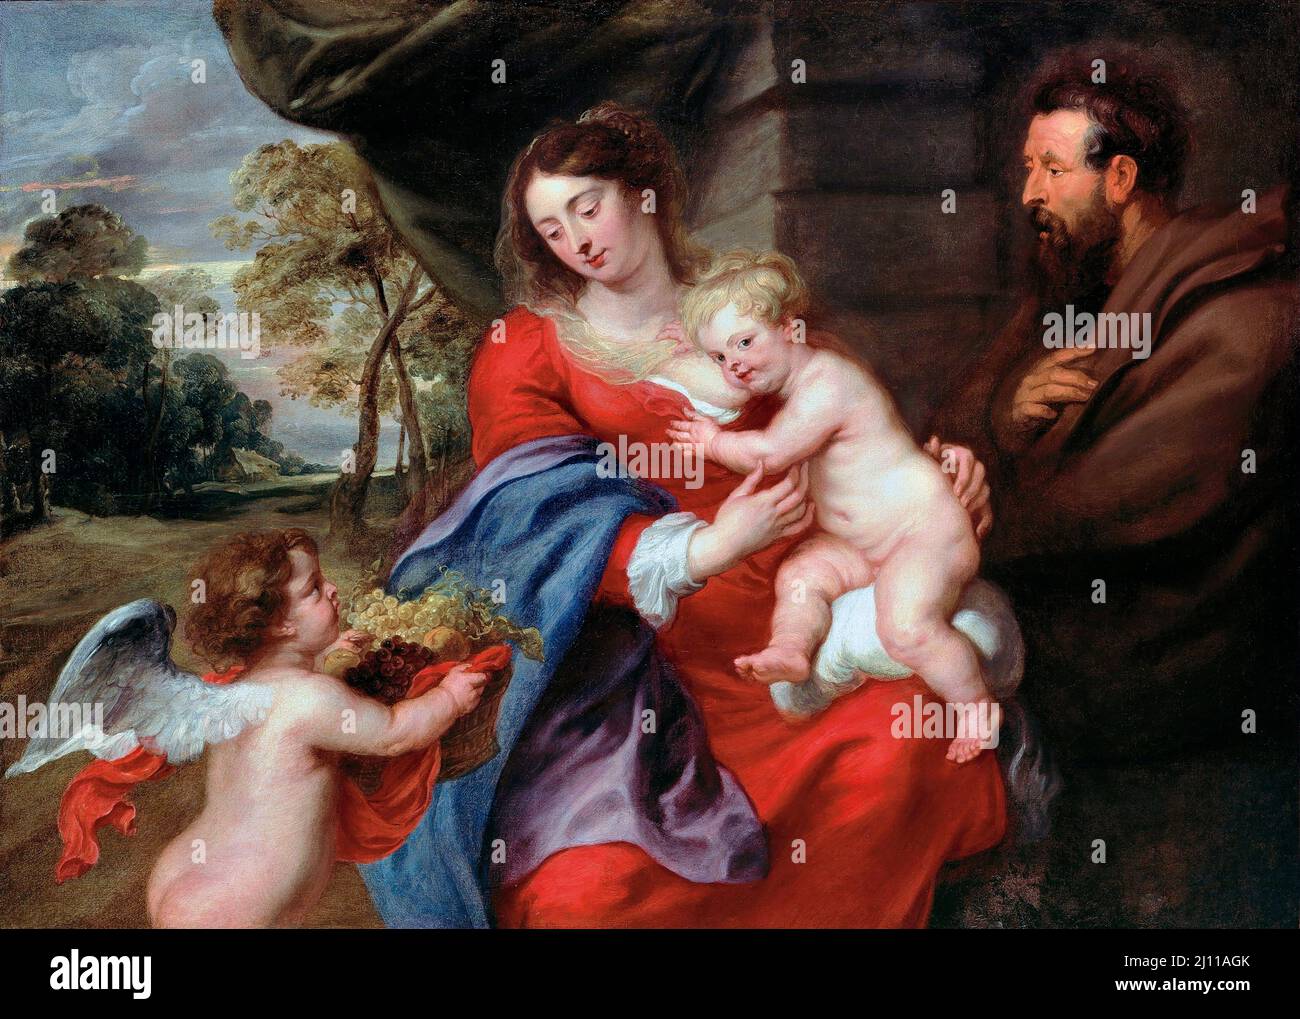 Rubens. Peinture de la Sainte famille par Peter Paul Rubens (1577-1640), huile sur toile, c. 1630 Banque D'Images